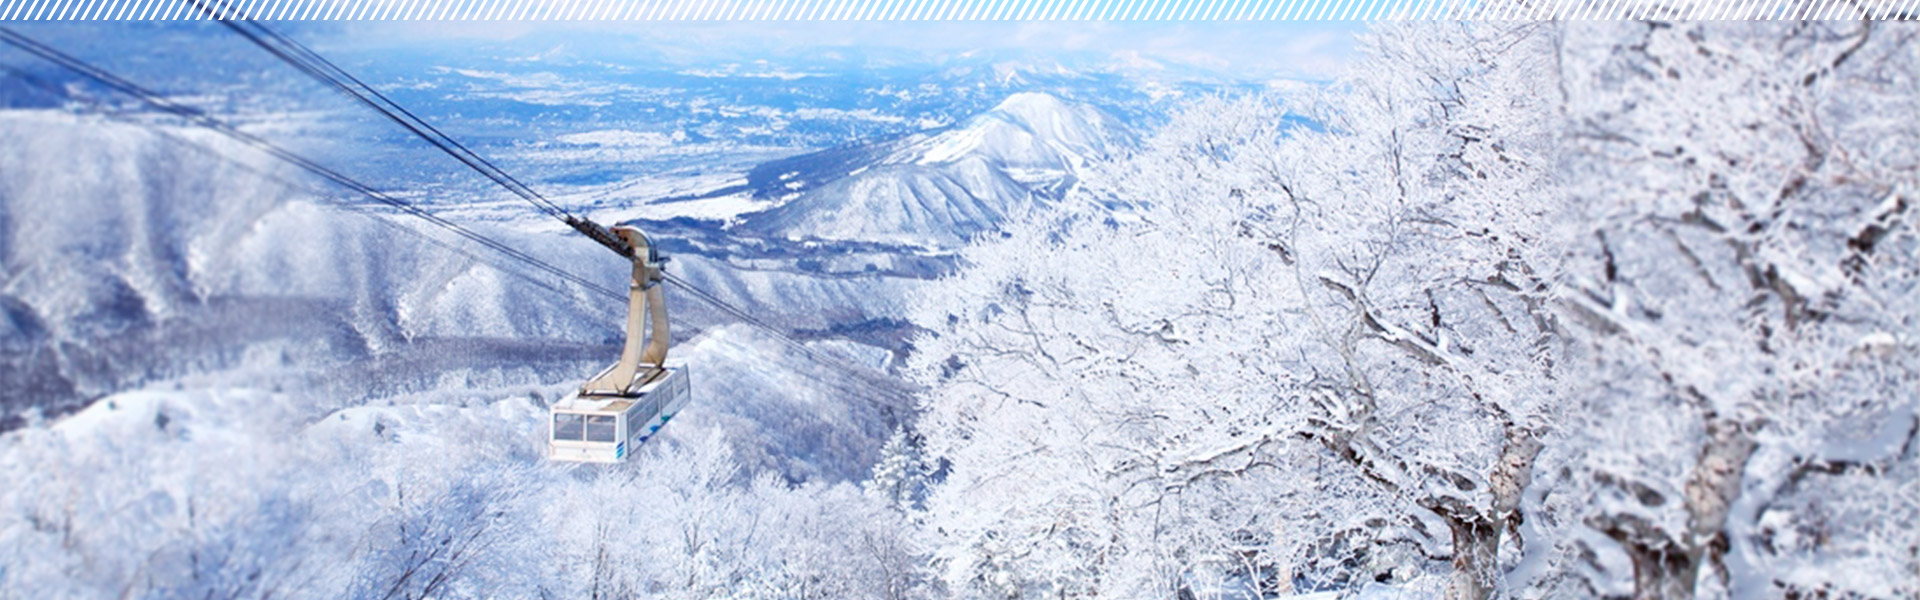 冬を楽しみつくす 雪国信州の旅へ 楽天トラベル